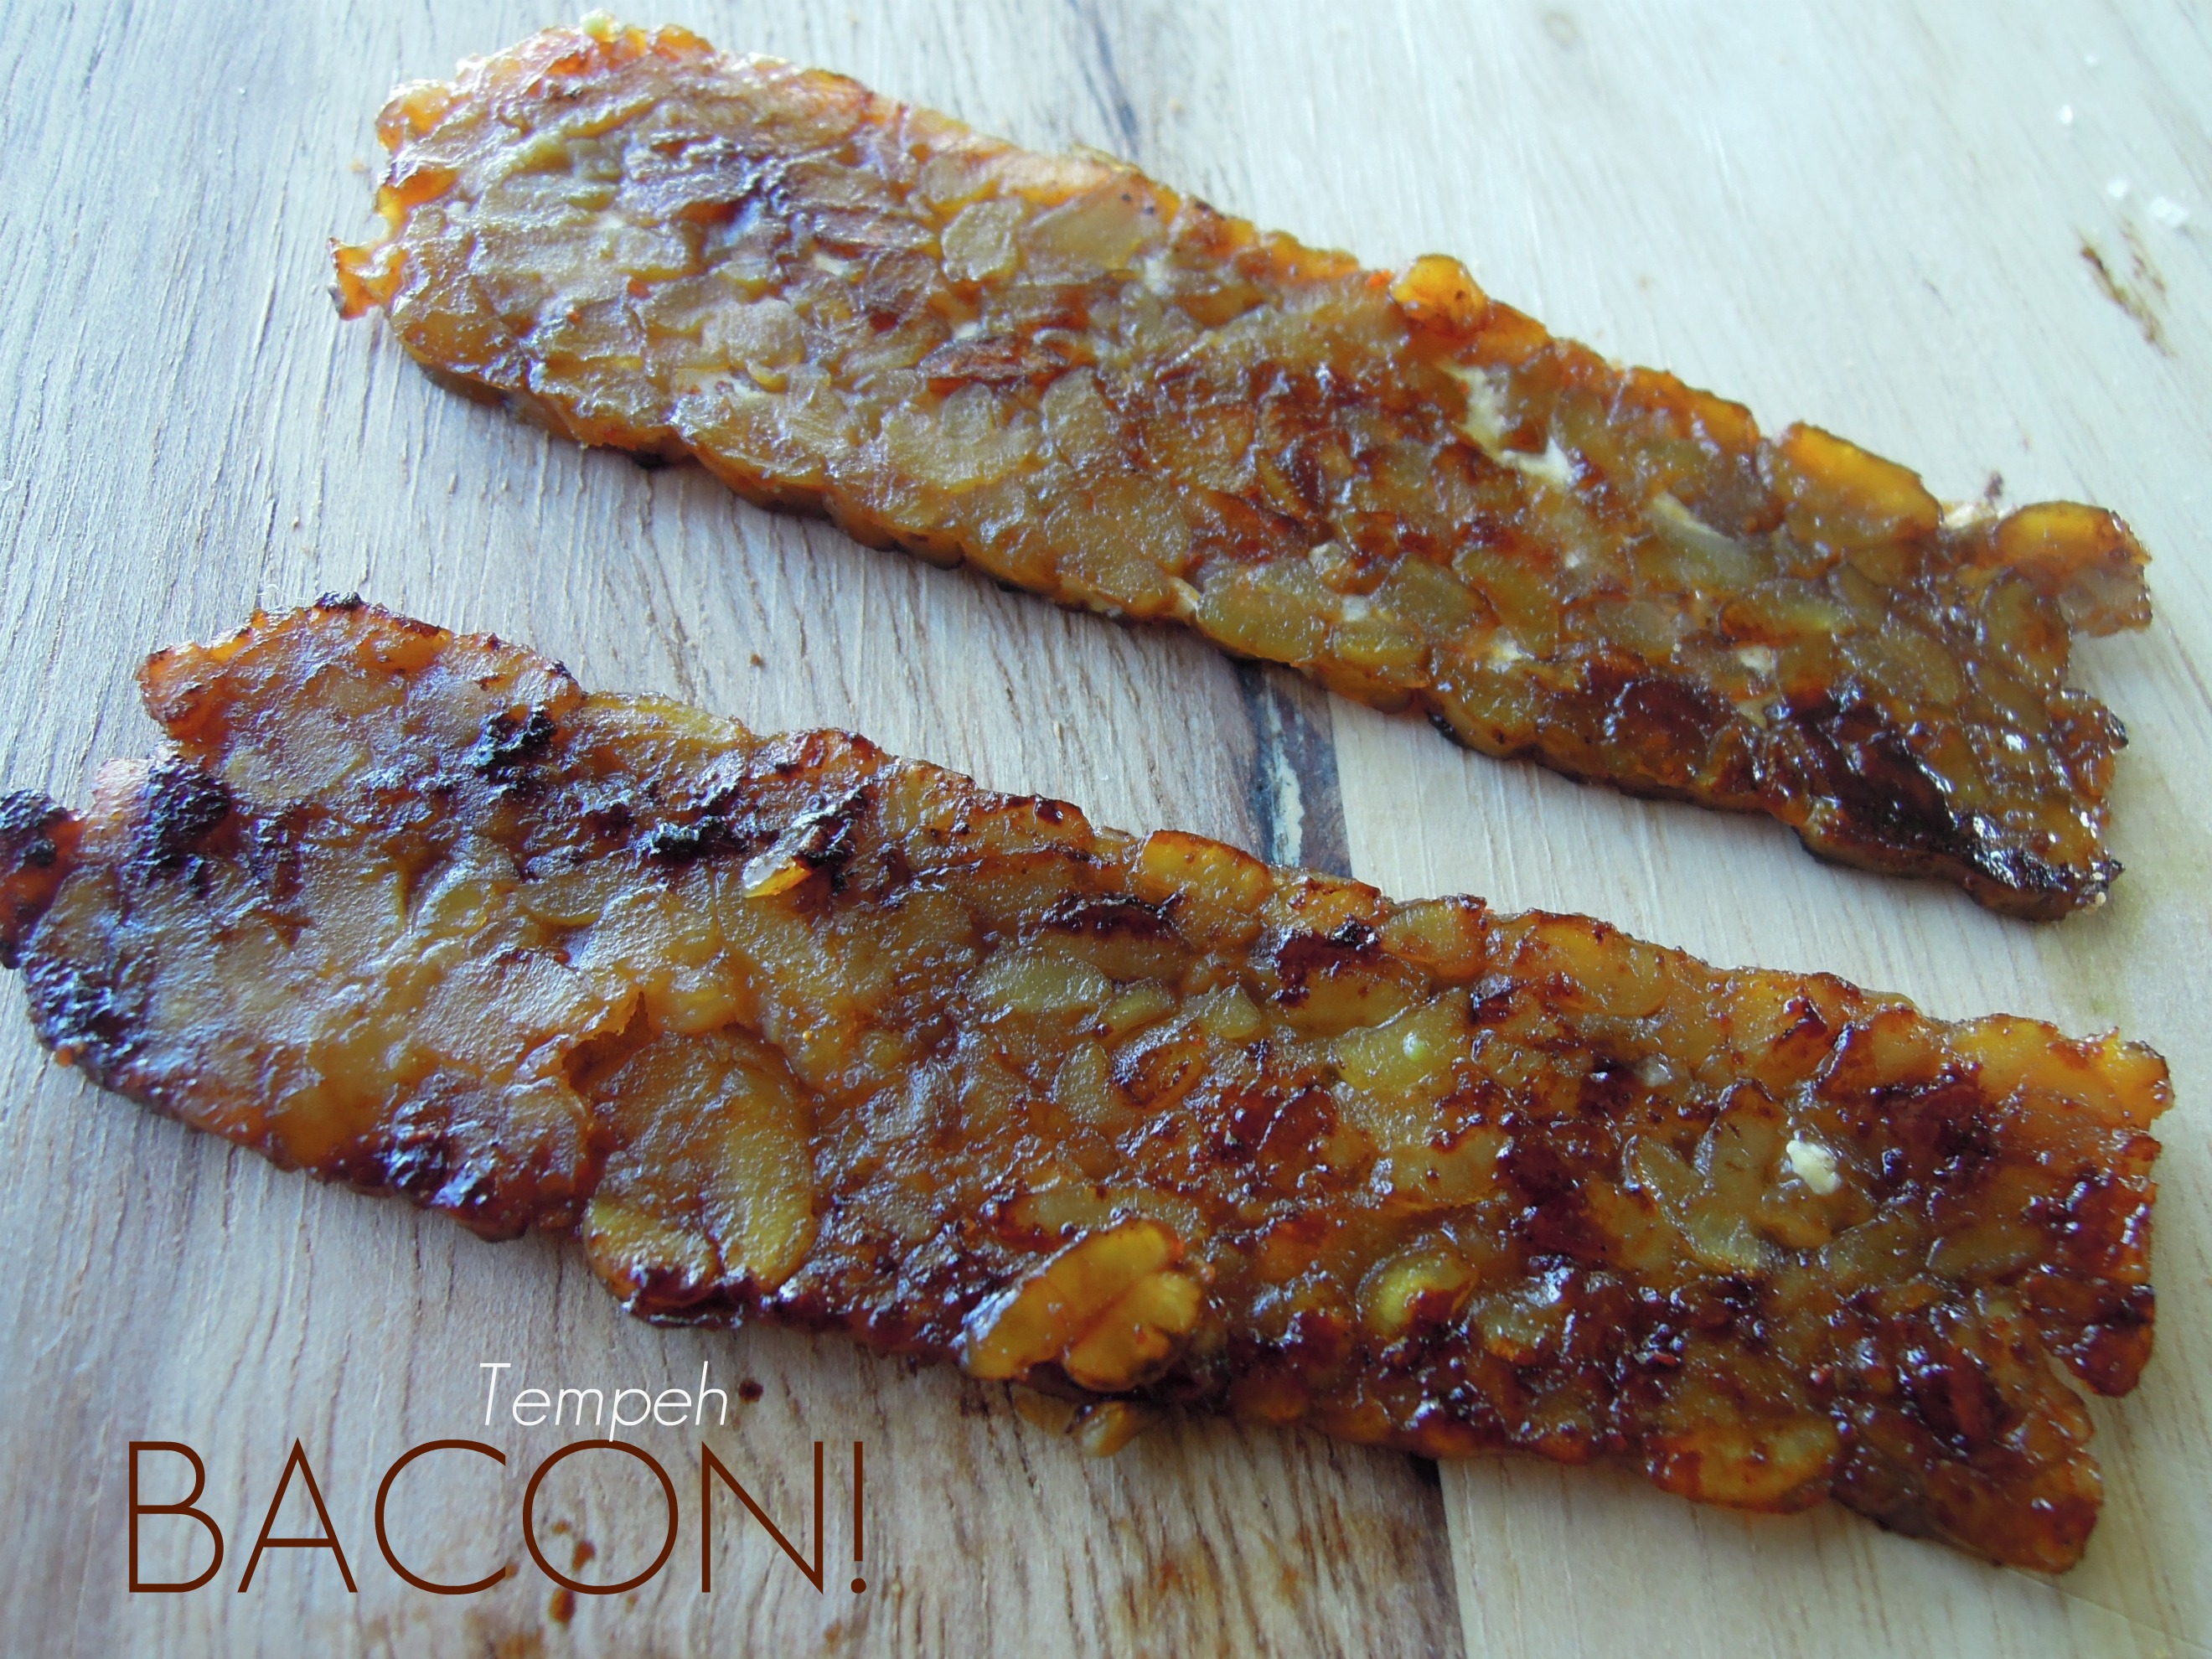 Homemade Tempeh "Bacon"